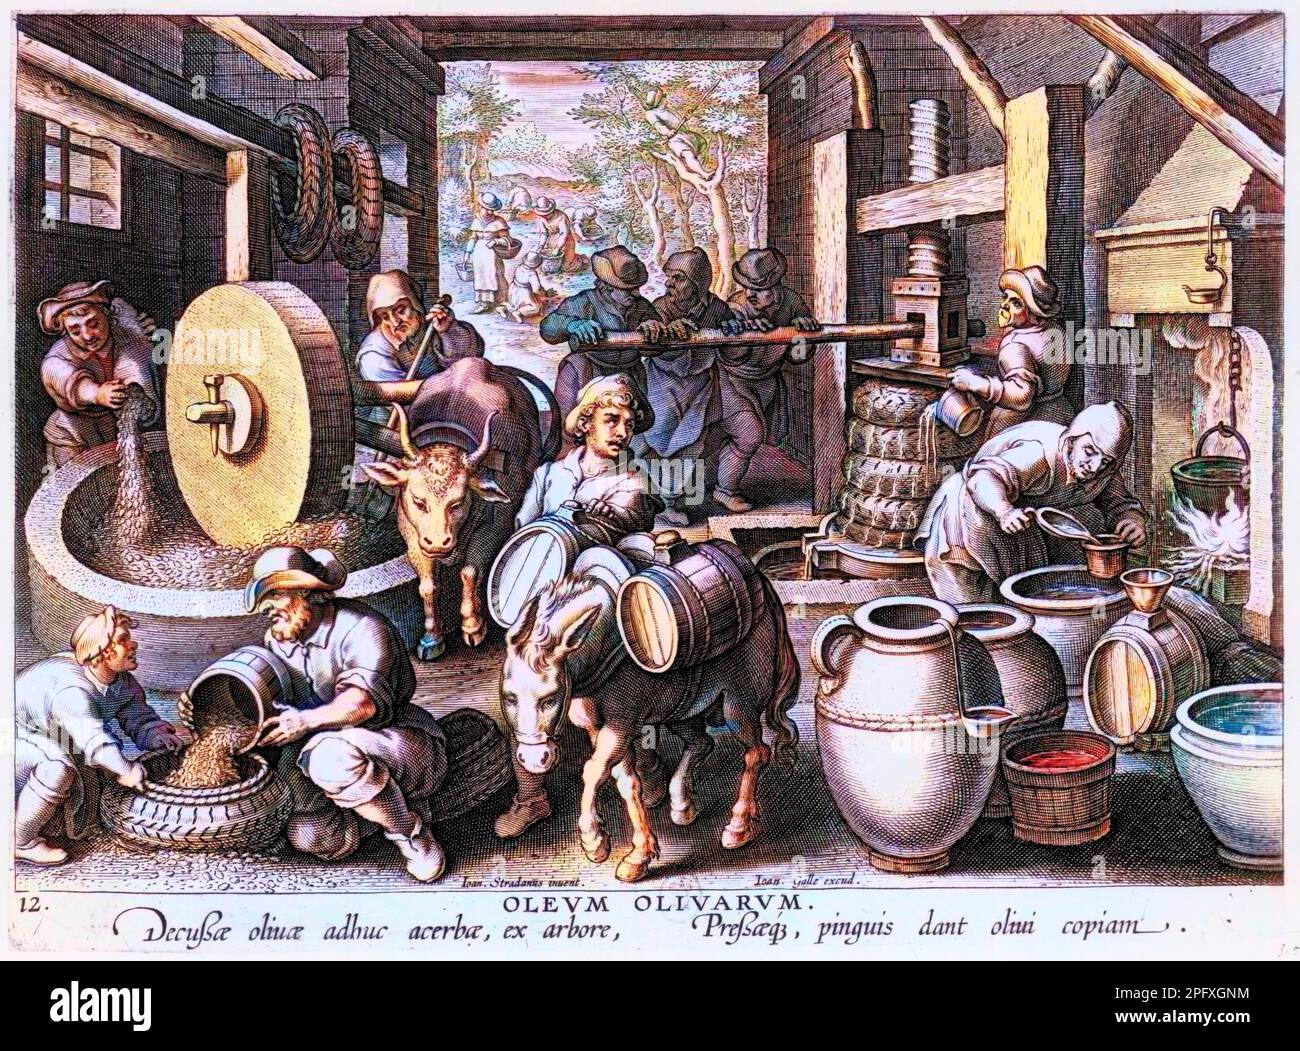 Oleum olivarum plate from 'e: la fabrication de l'huile d'olive (cueillette, pressage, filtrage, remplissage des tonneaux...) - gravure flamande, XVIème siècle Stock Photo